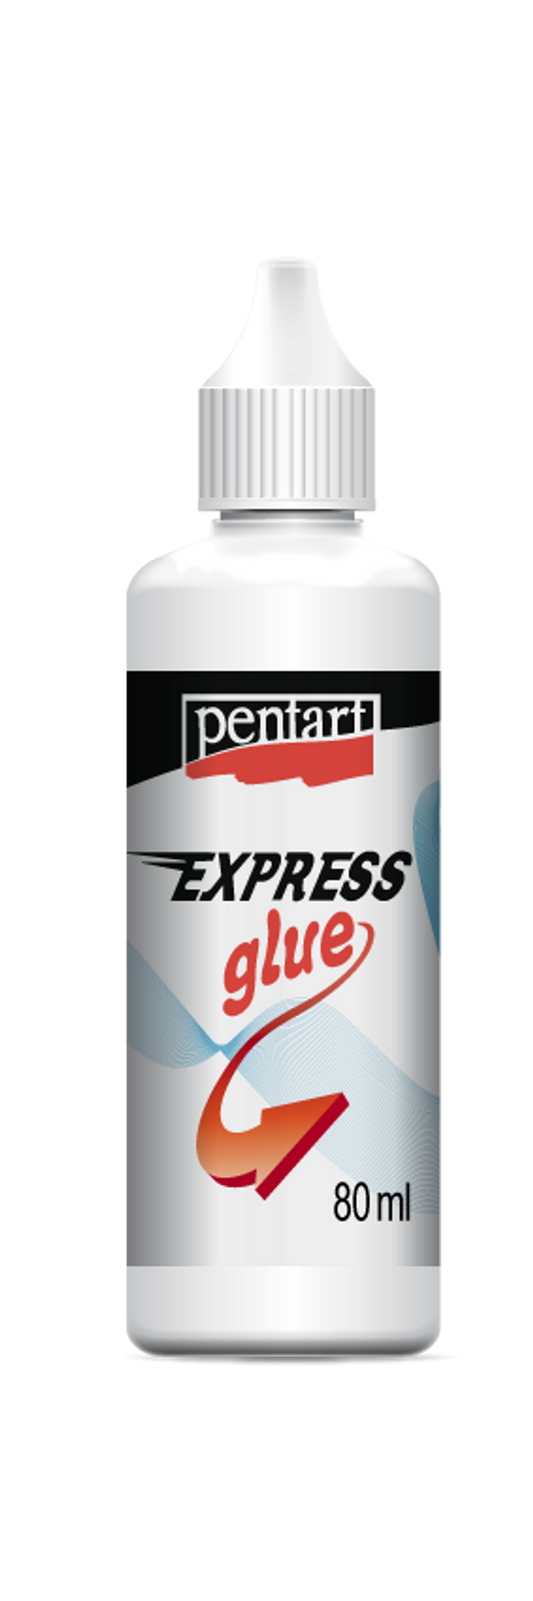 Pentart Express Glue - Decoupage Queen